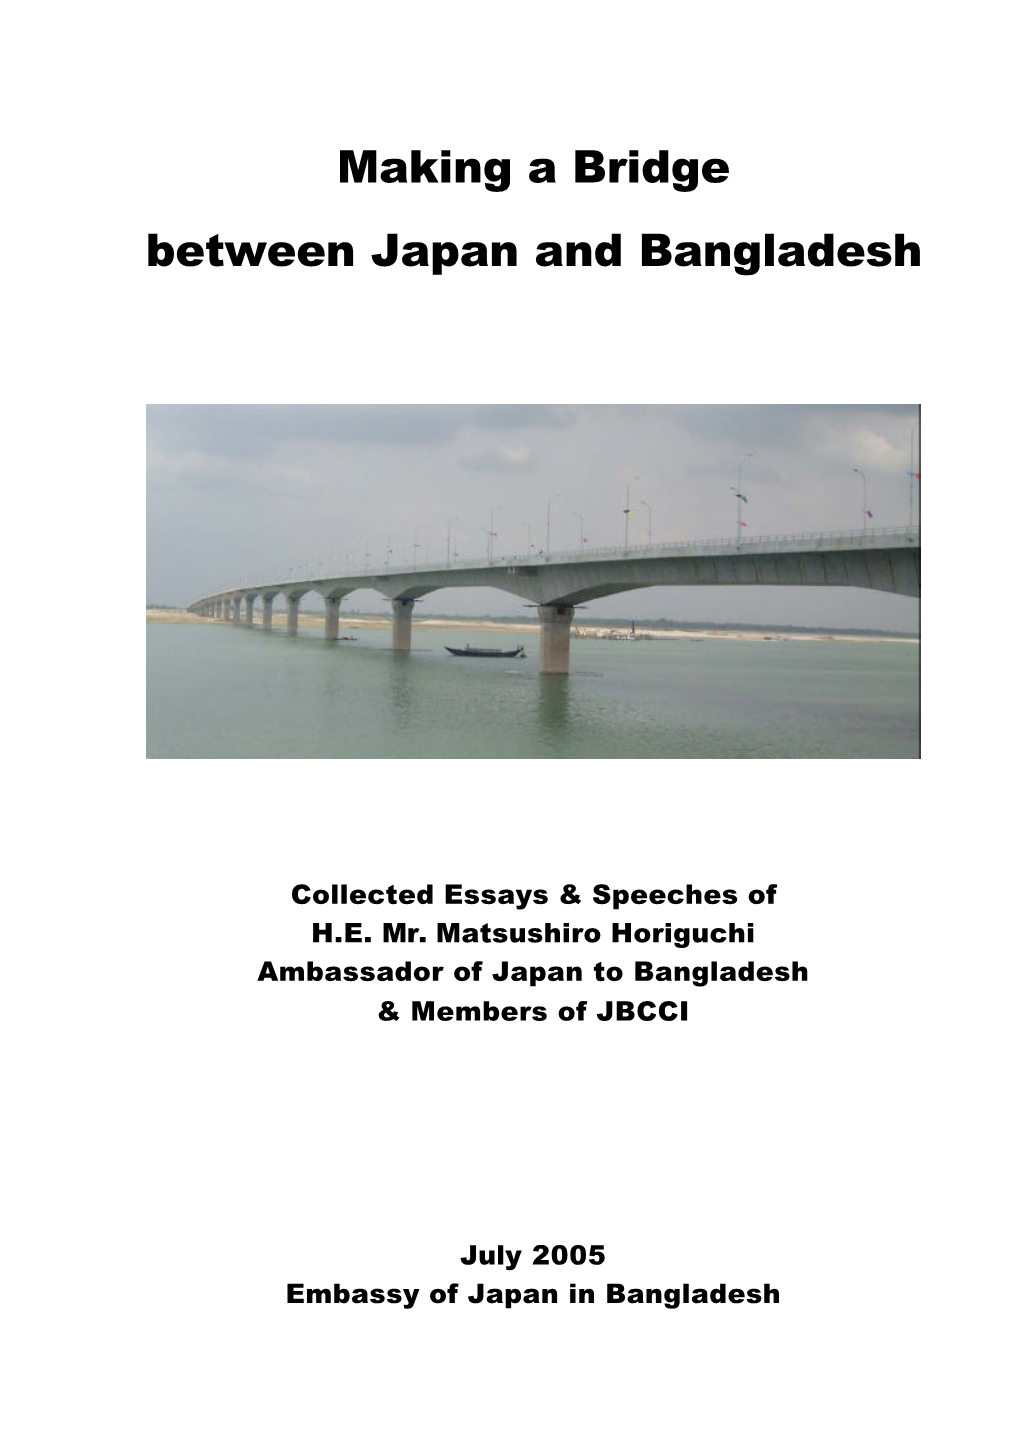 Making a Bridge Between Japan and Bangladesh